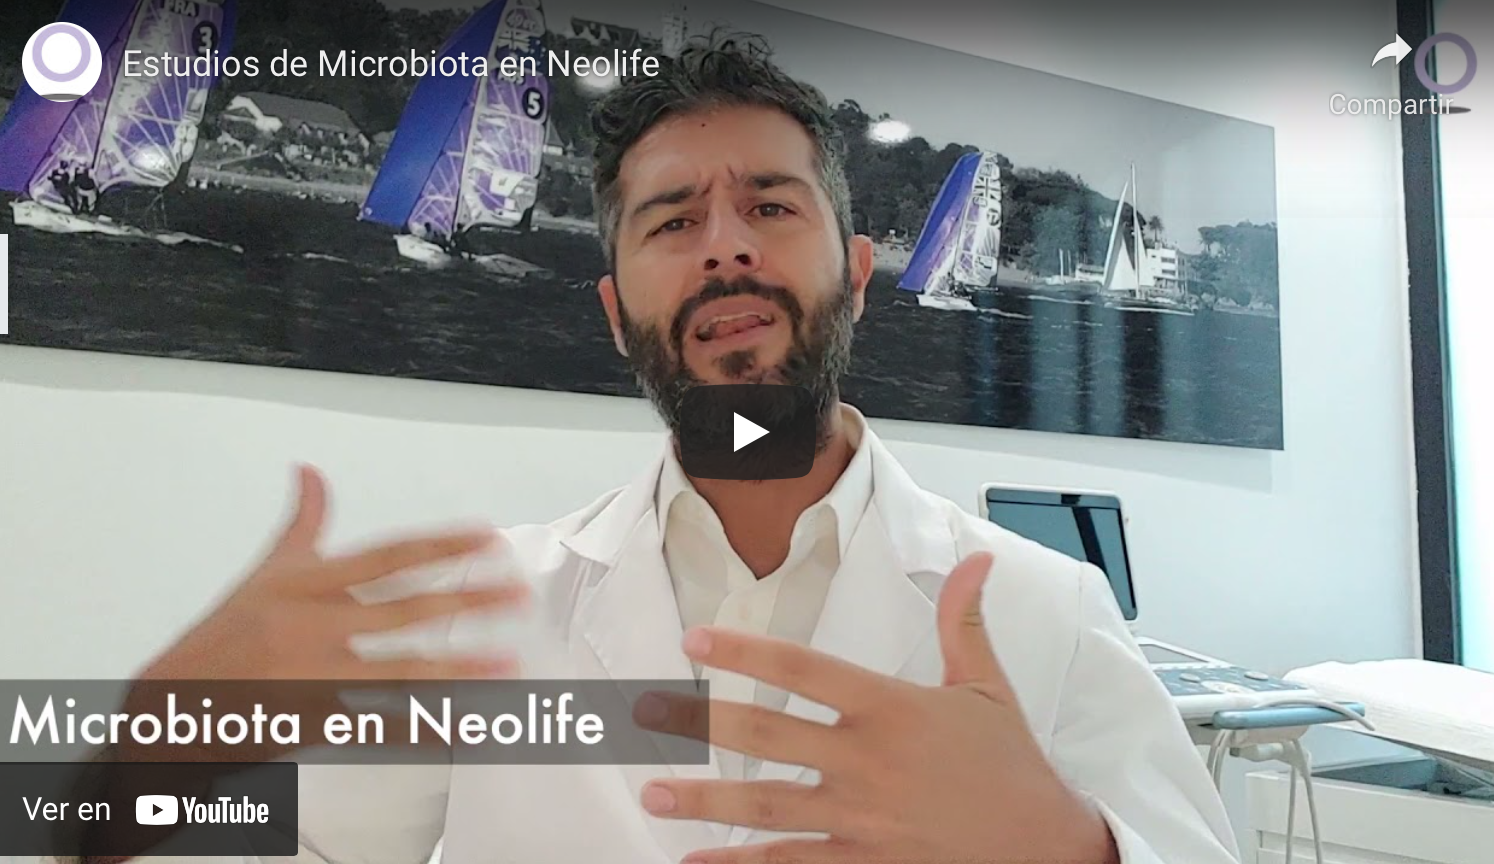 Microbiota en Neolife